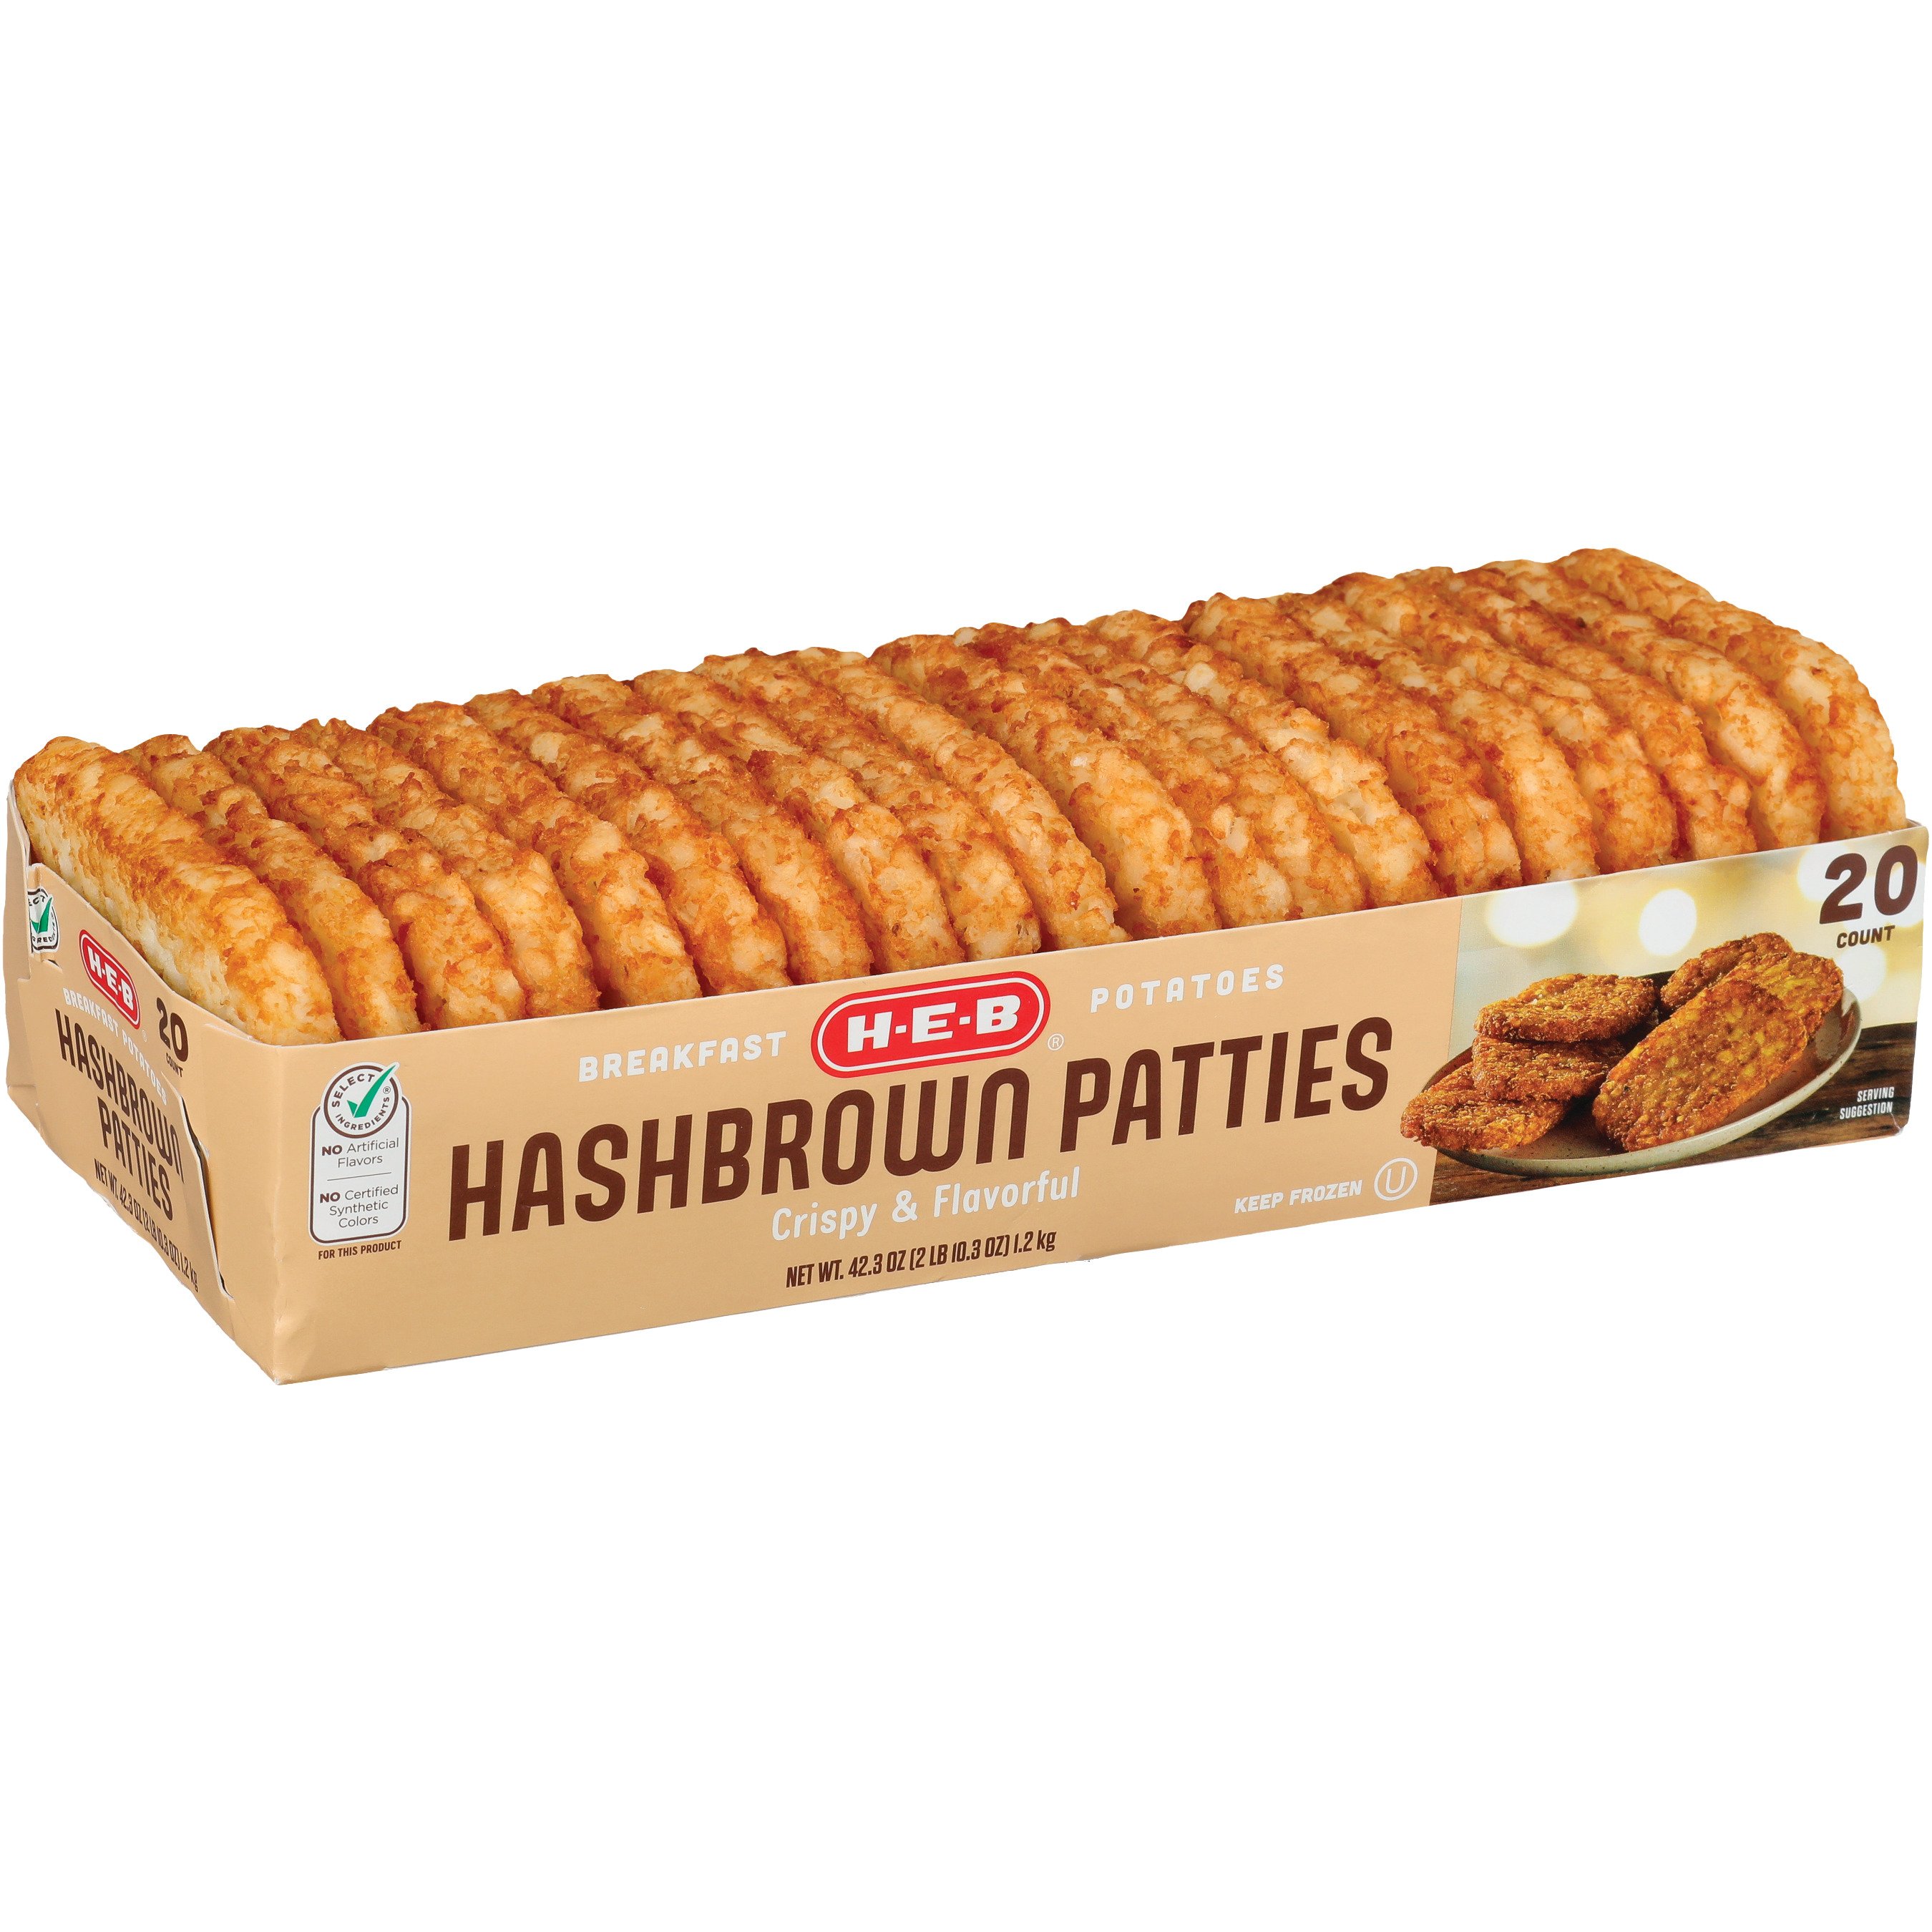 hash brown patties